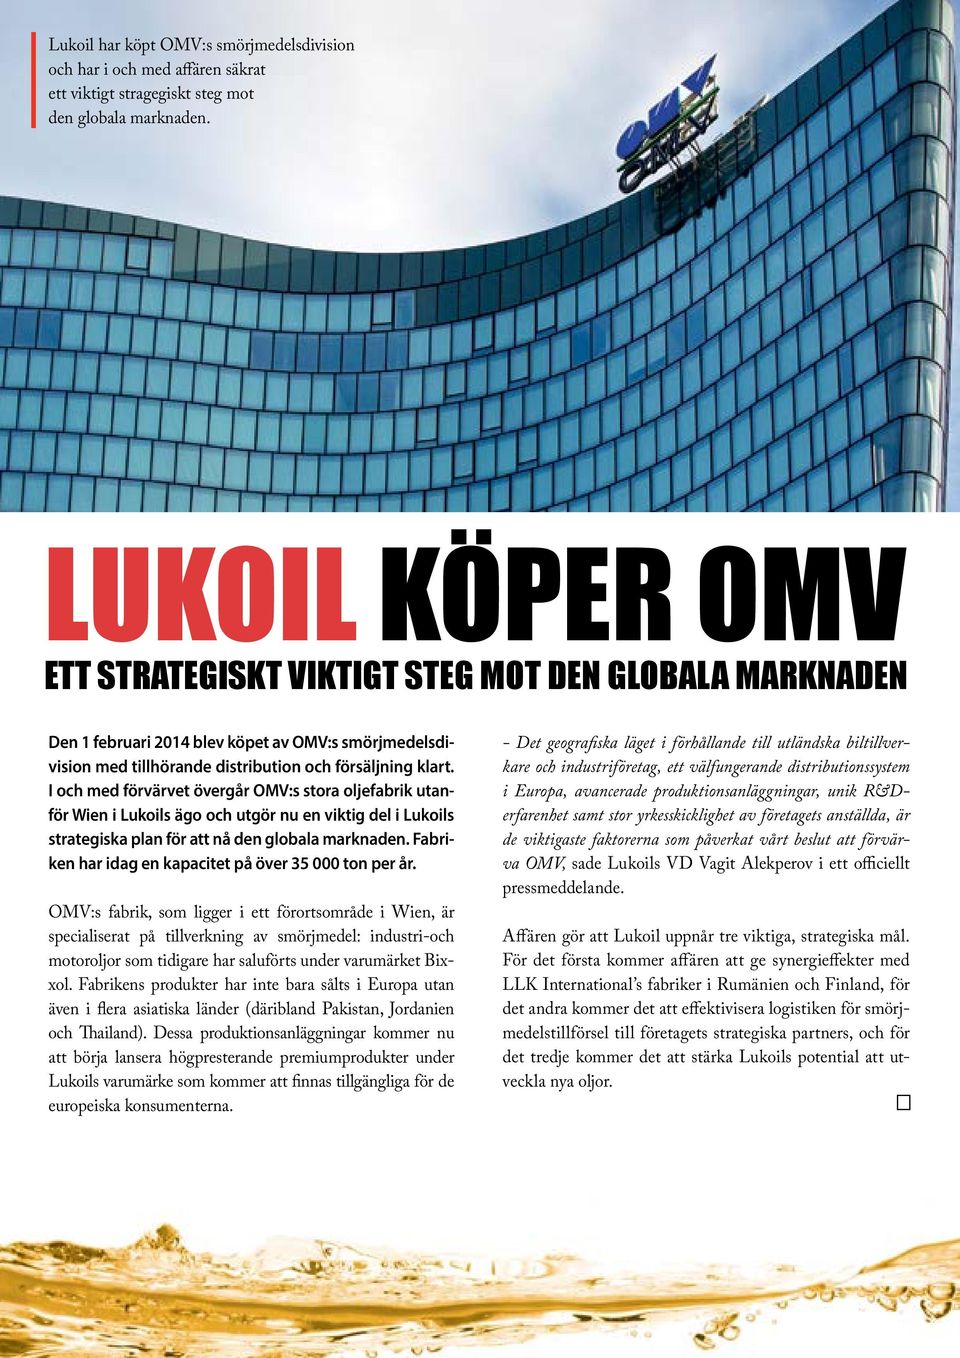 I och med förvärvet övergår OMV:s stora oljefabrik utanför Wien i Lukoils ägo och utgör nu en viktig del i Lukoils strategiska plan för att nå den globala marknaden.